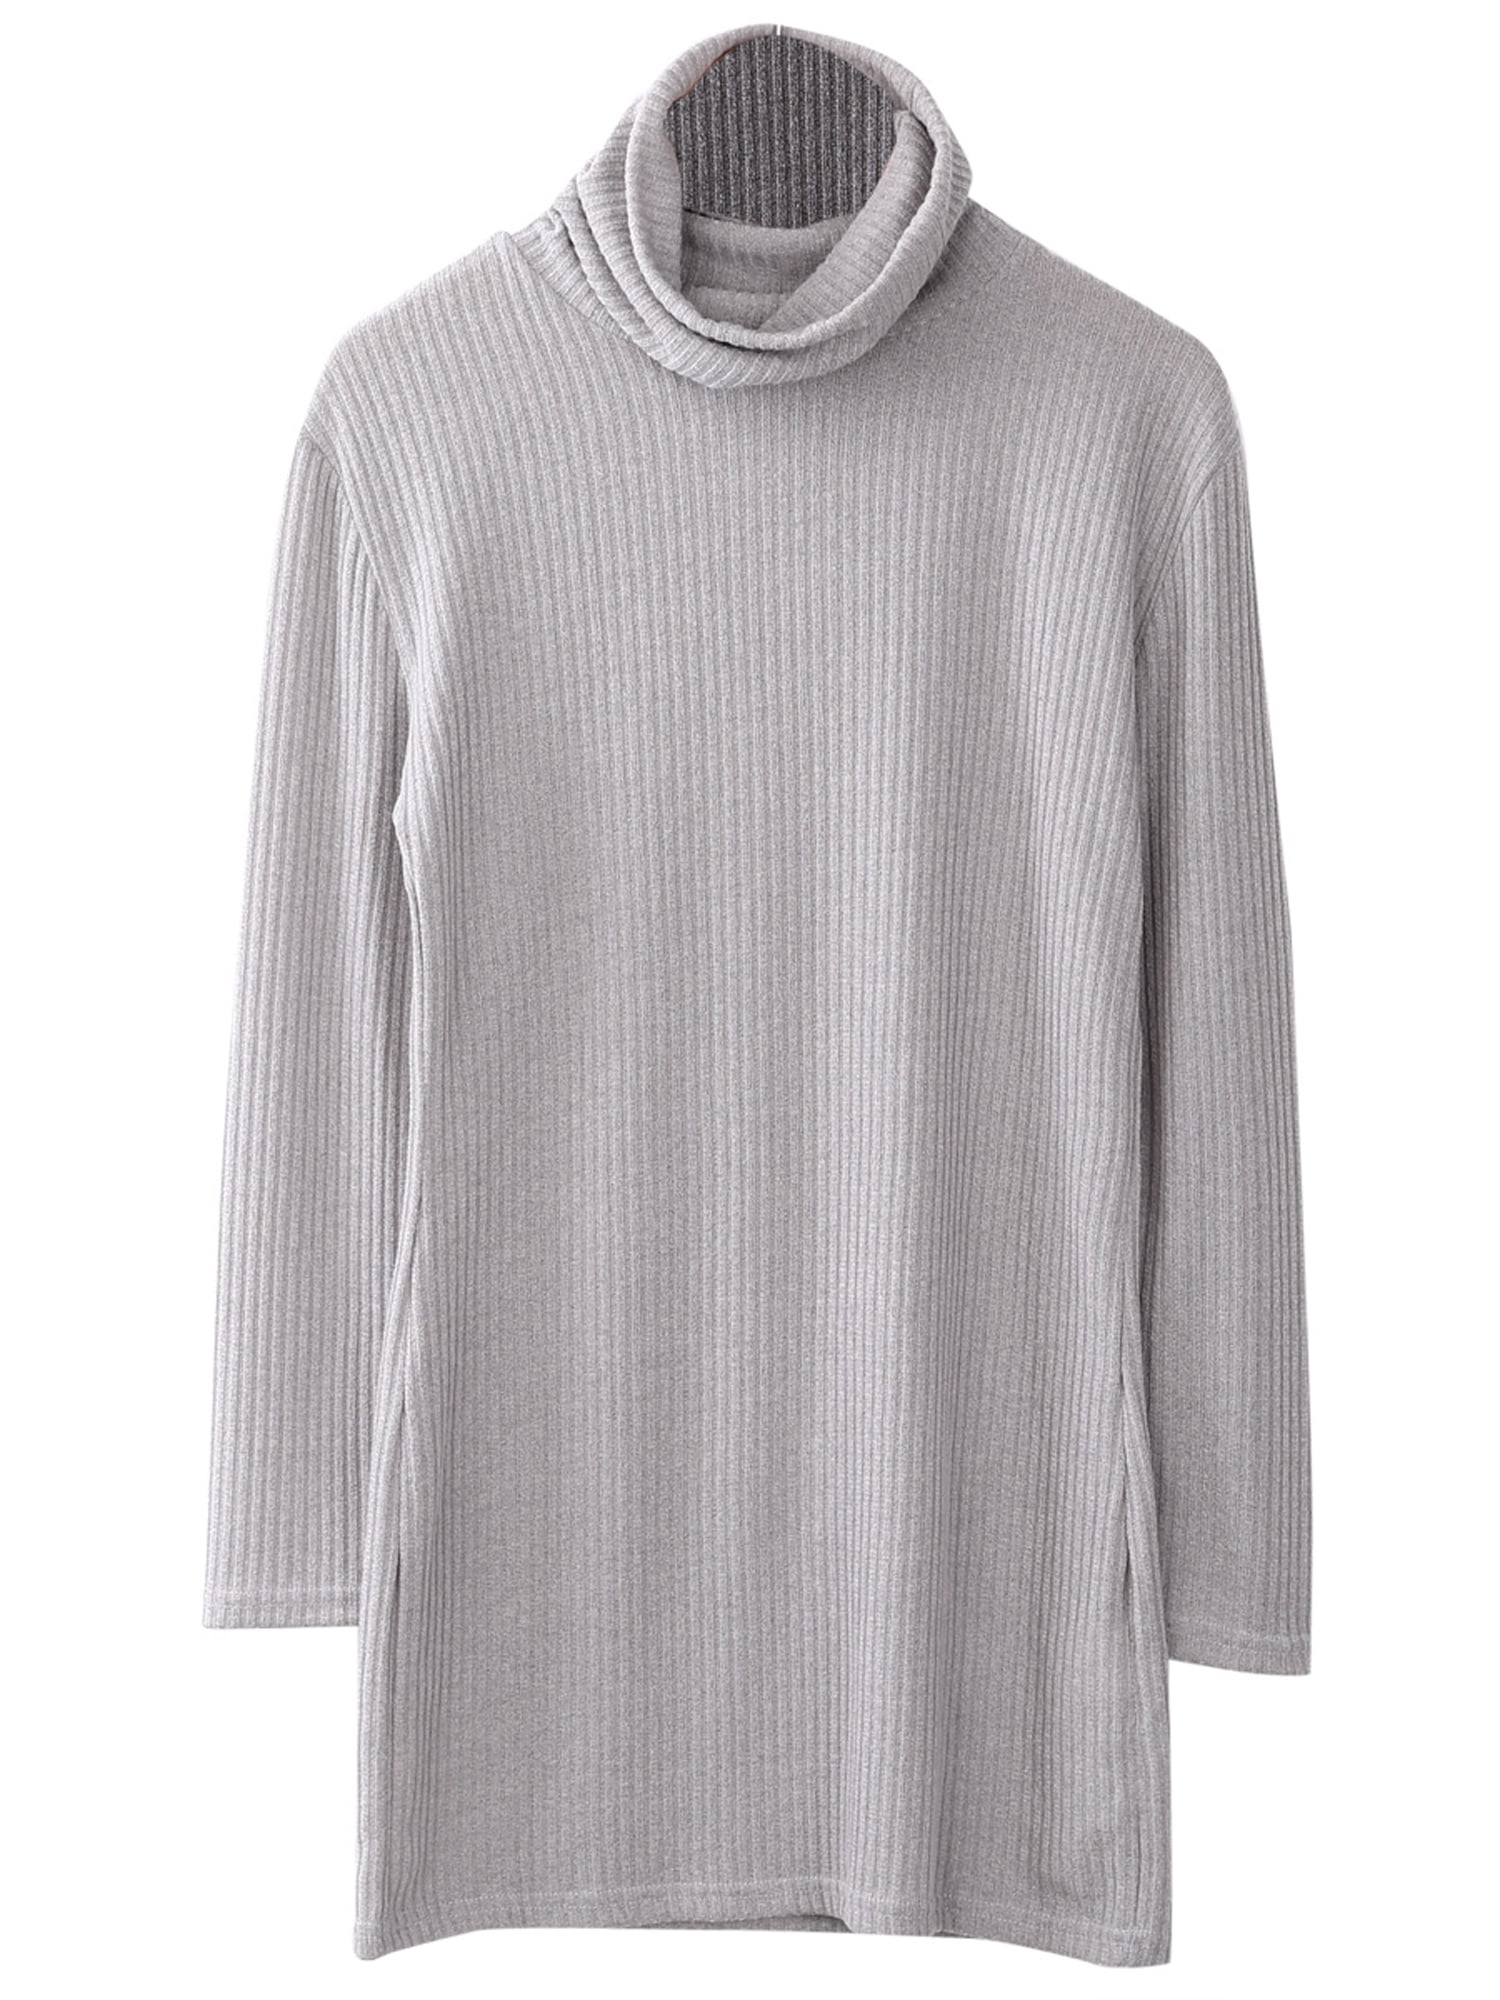 Women Cowl Neck Loose Long Sleeve Oversize Sweater Jumper Shirt Tops Dress *1